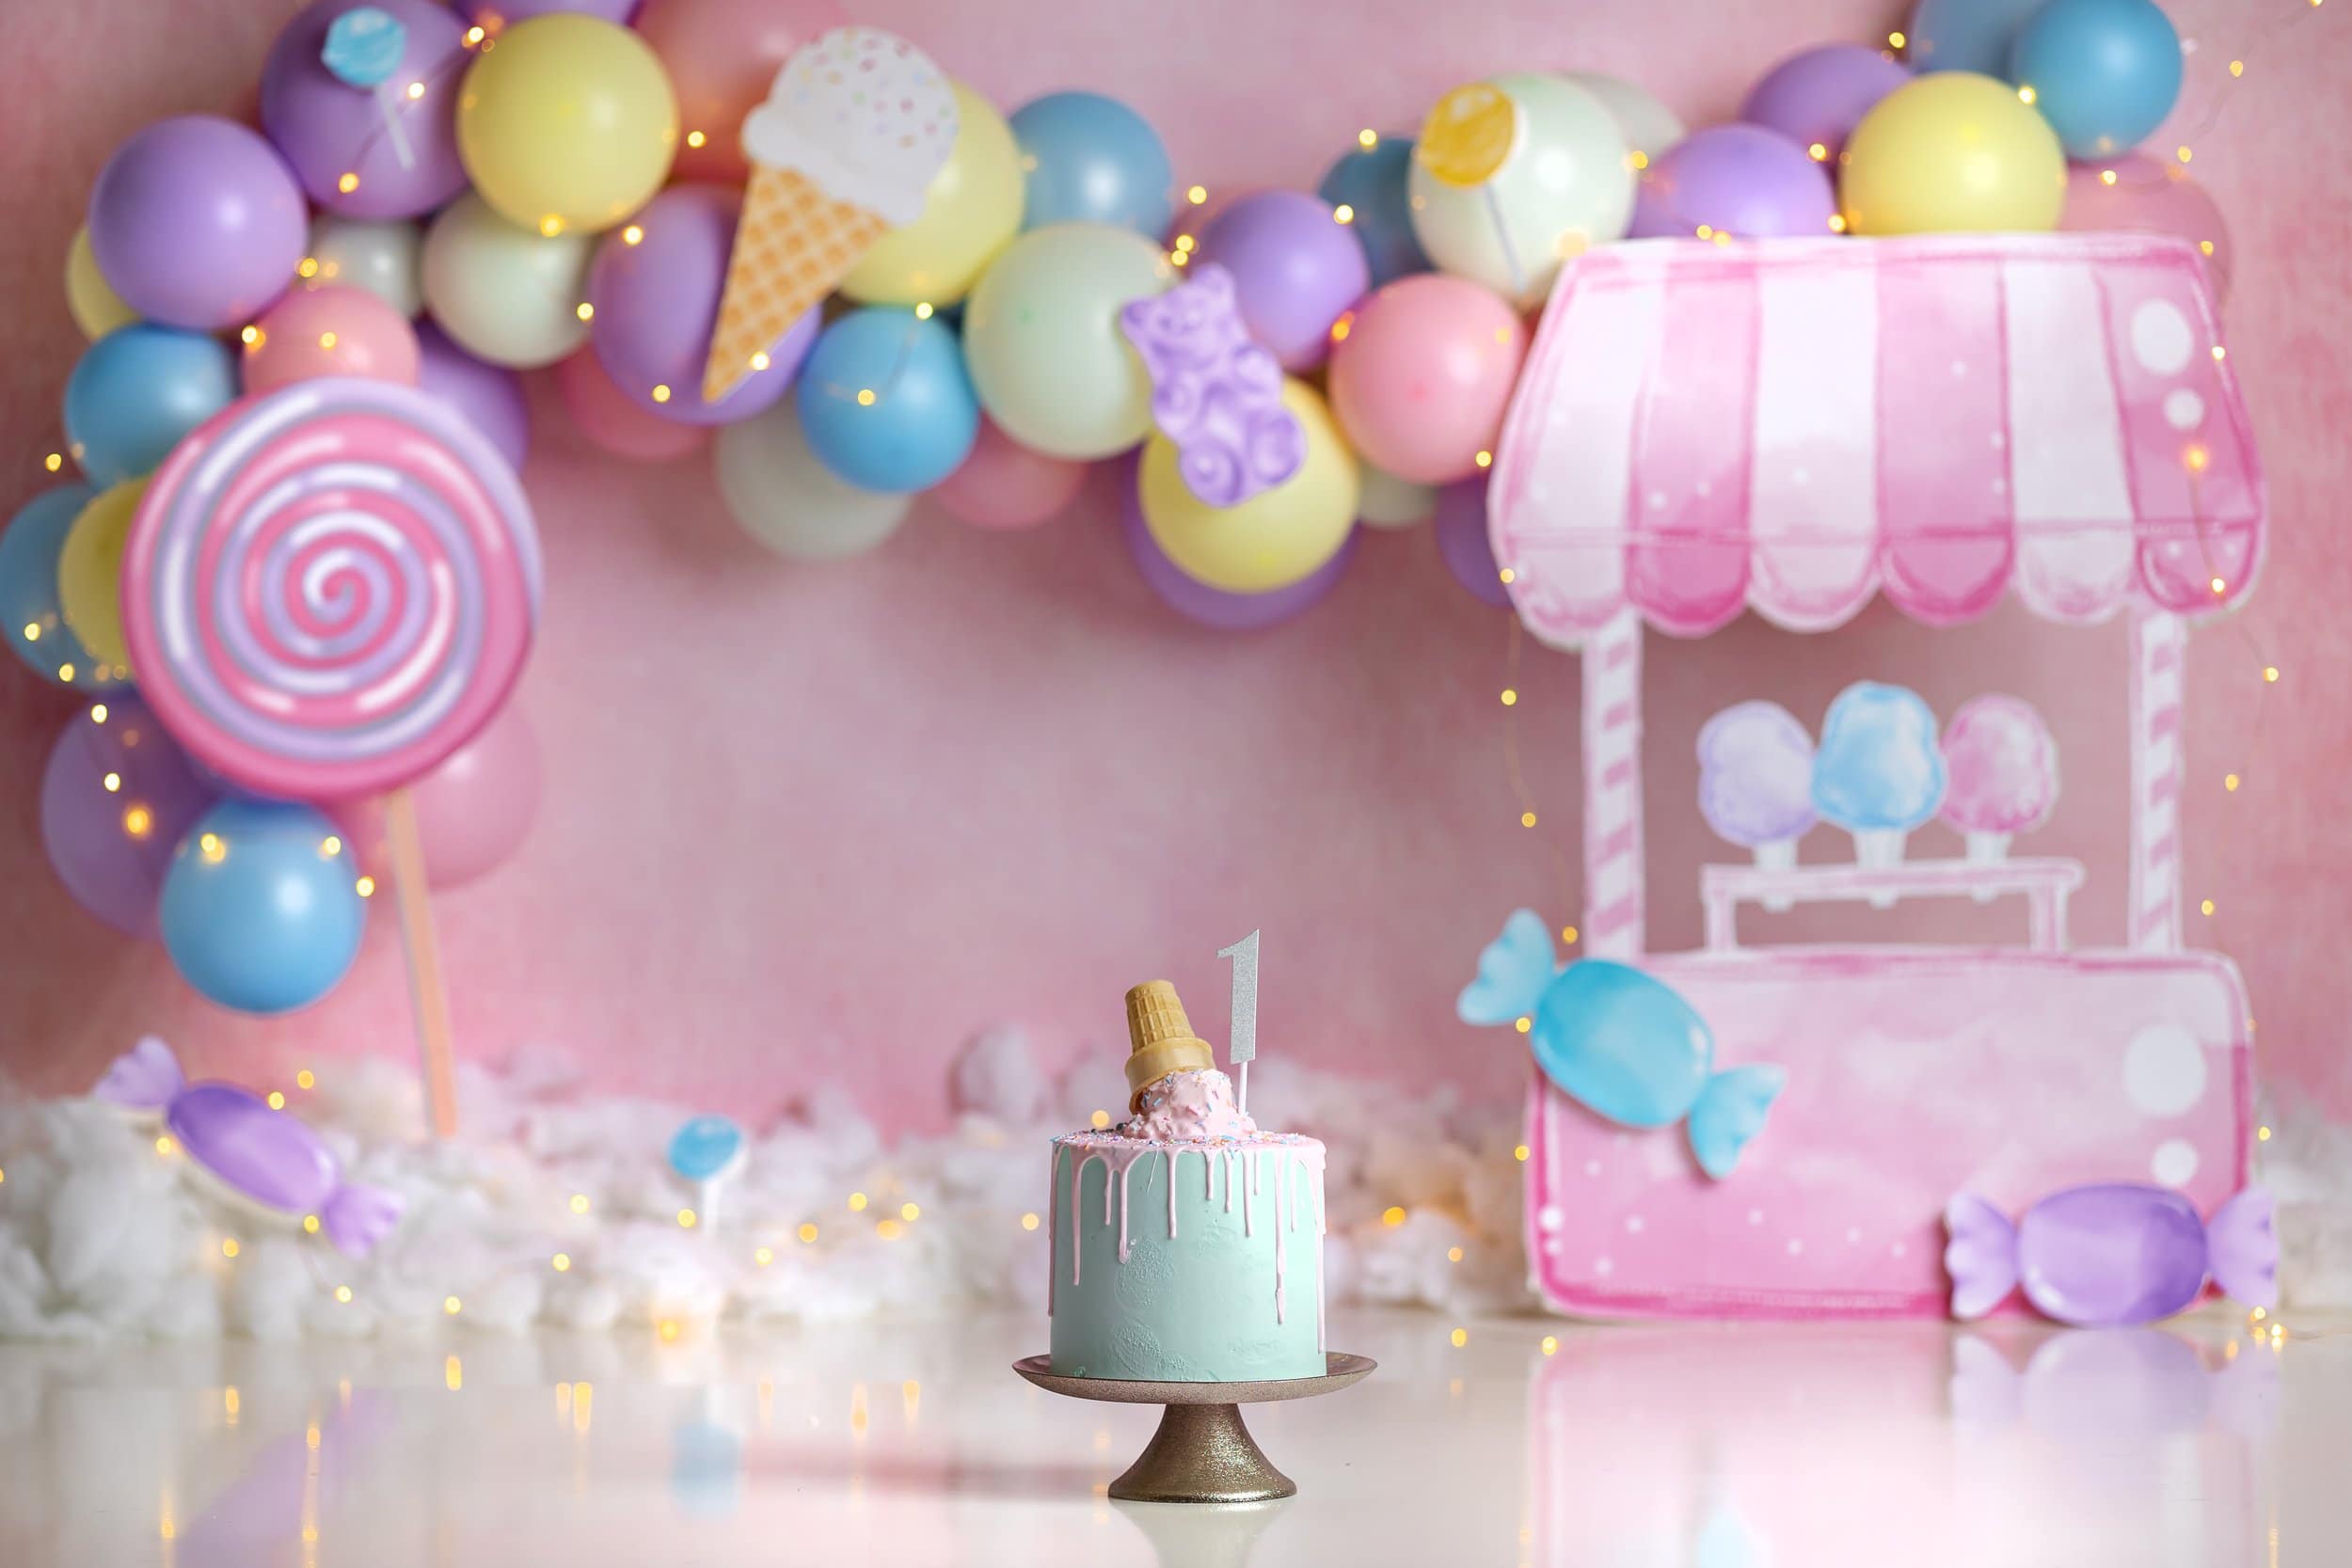 Cake Smash Themes - Candyland